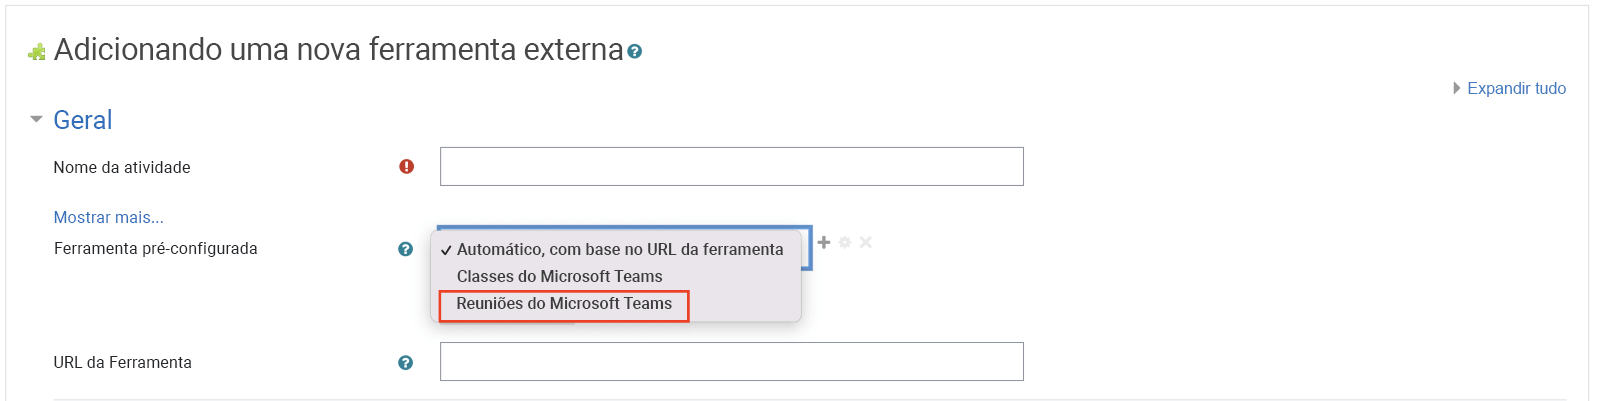 Captura de tela do Moodle, selecionando "Reuniões de equipes" na lista suspensa de ferramentas pré-configuradas.